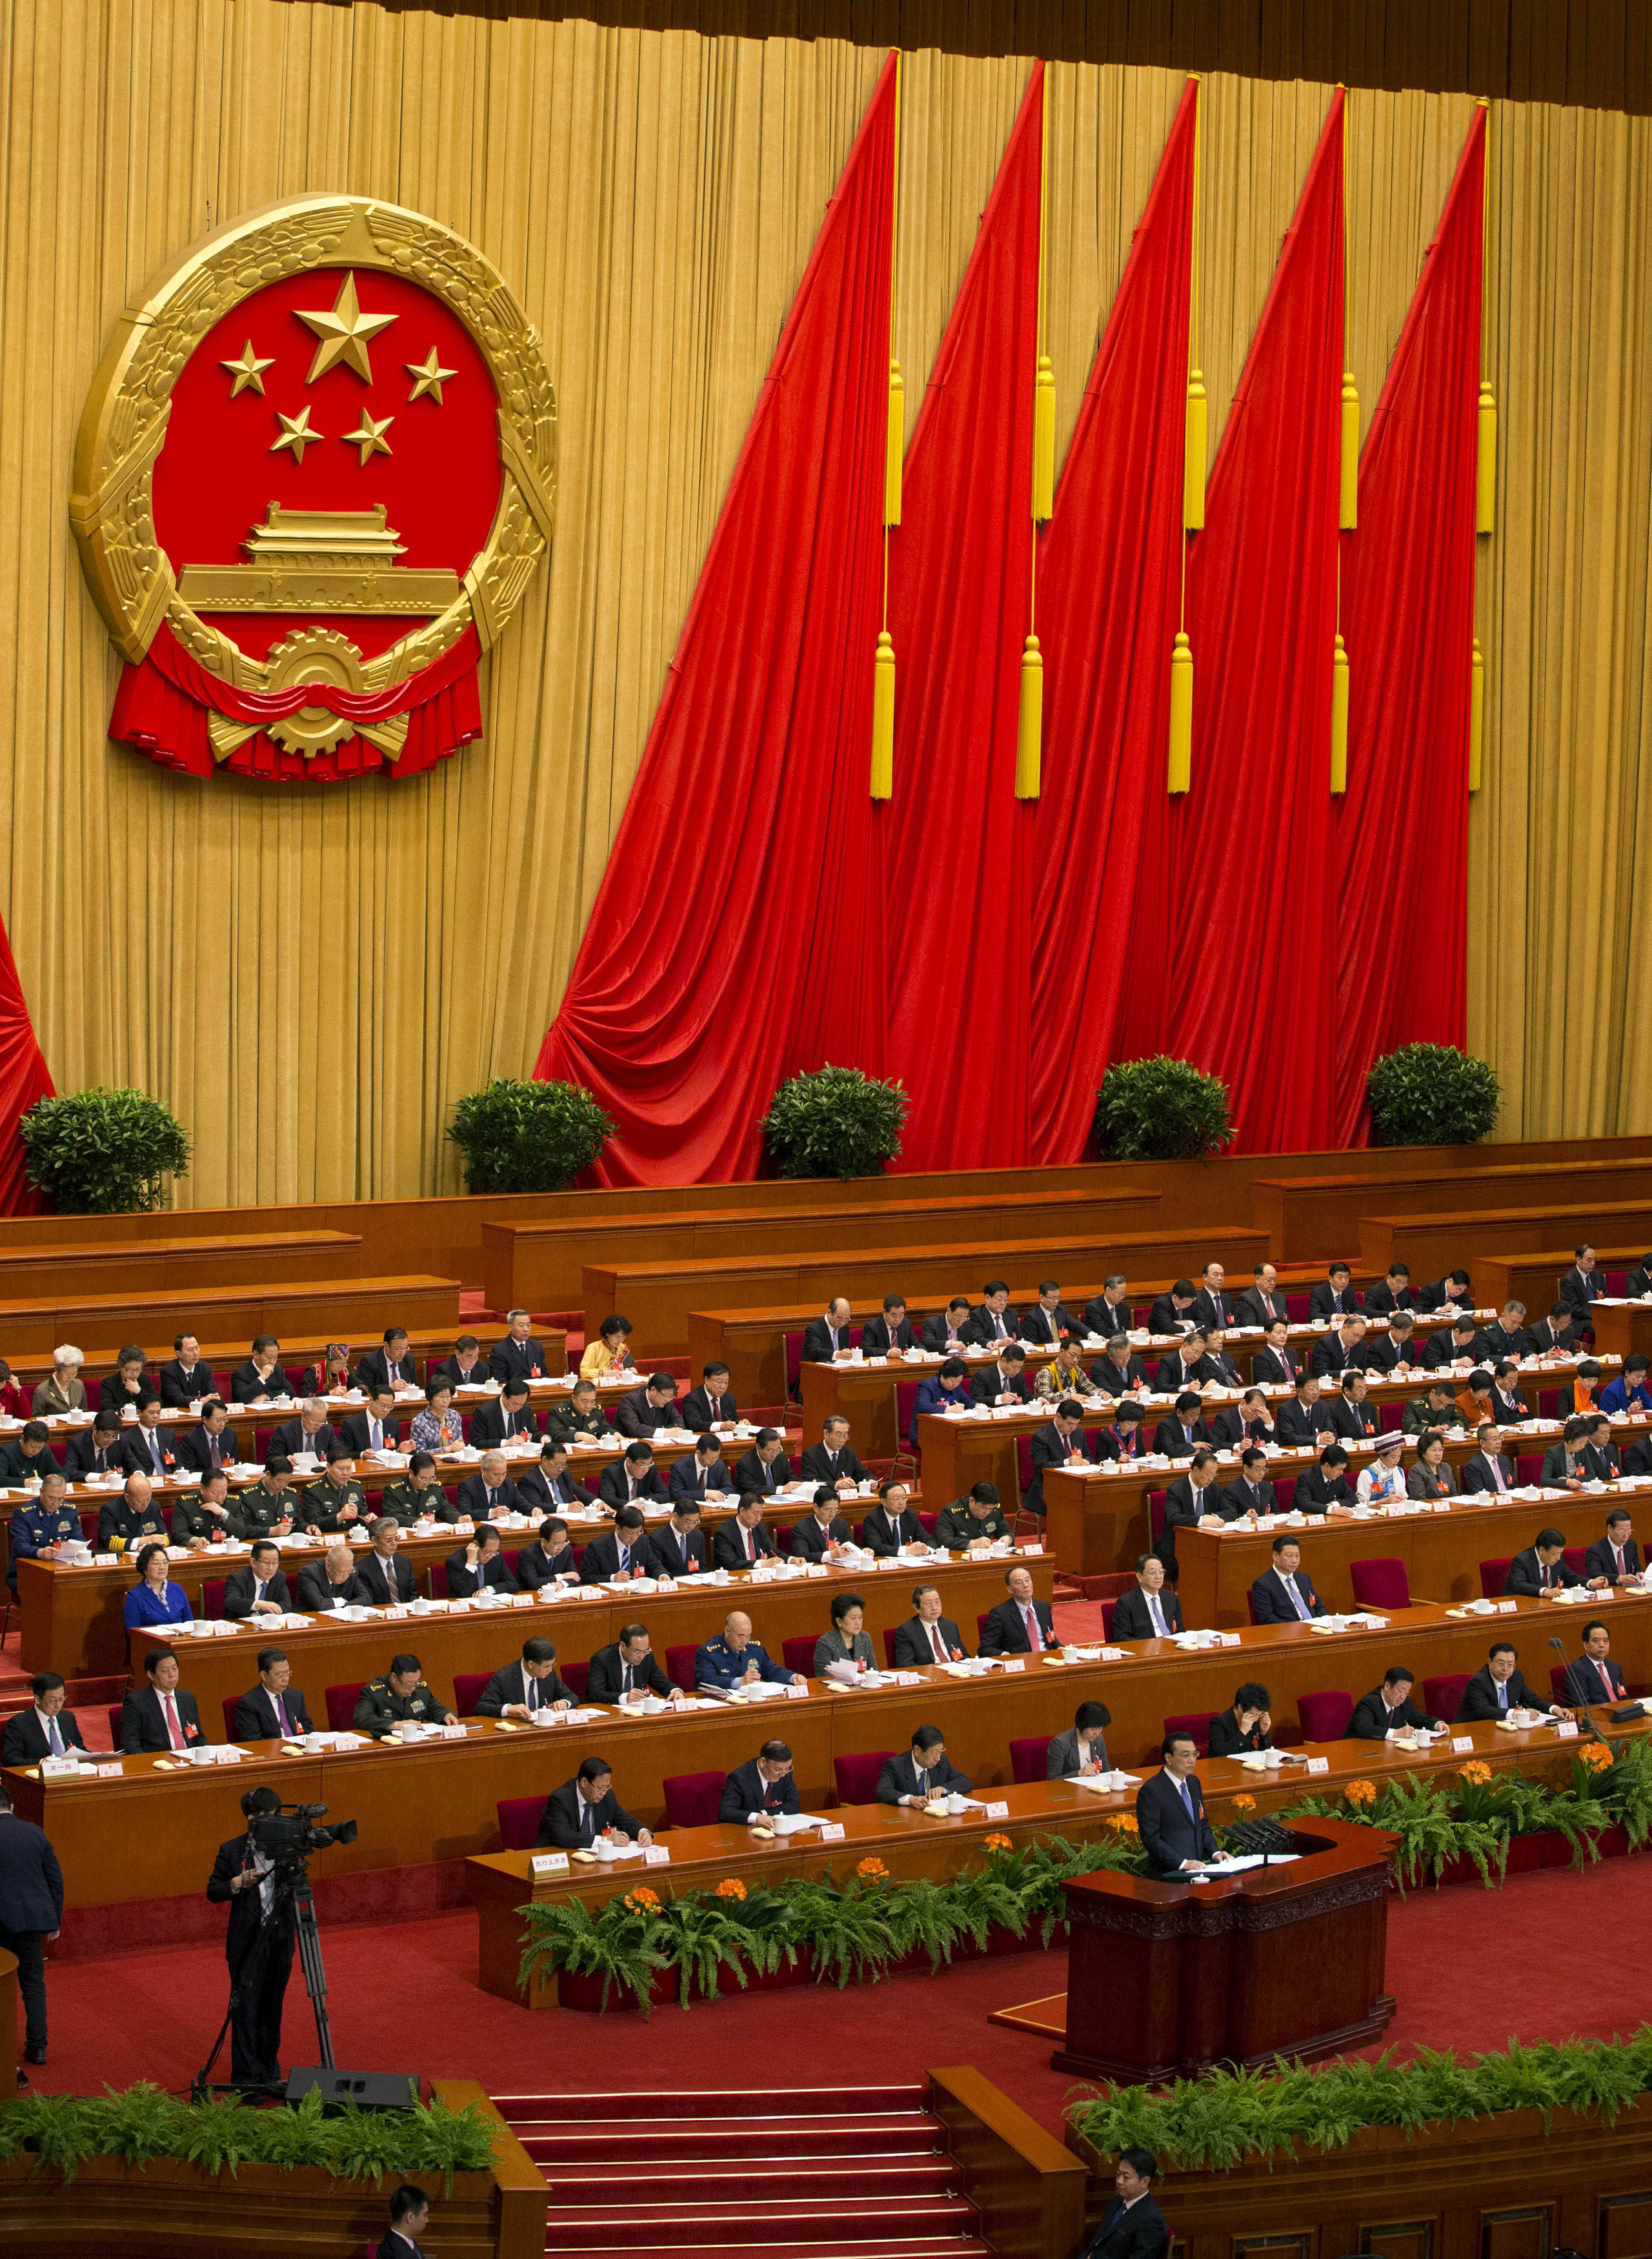 Μεταρρυθμίσεις με στόχο μια βιώσιμη ανάπτυξη εξήγγειλε ο κινέζος πρωθυπουργός